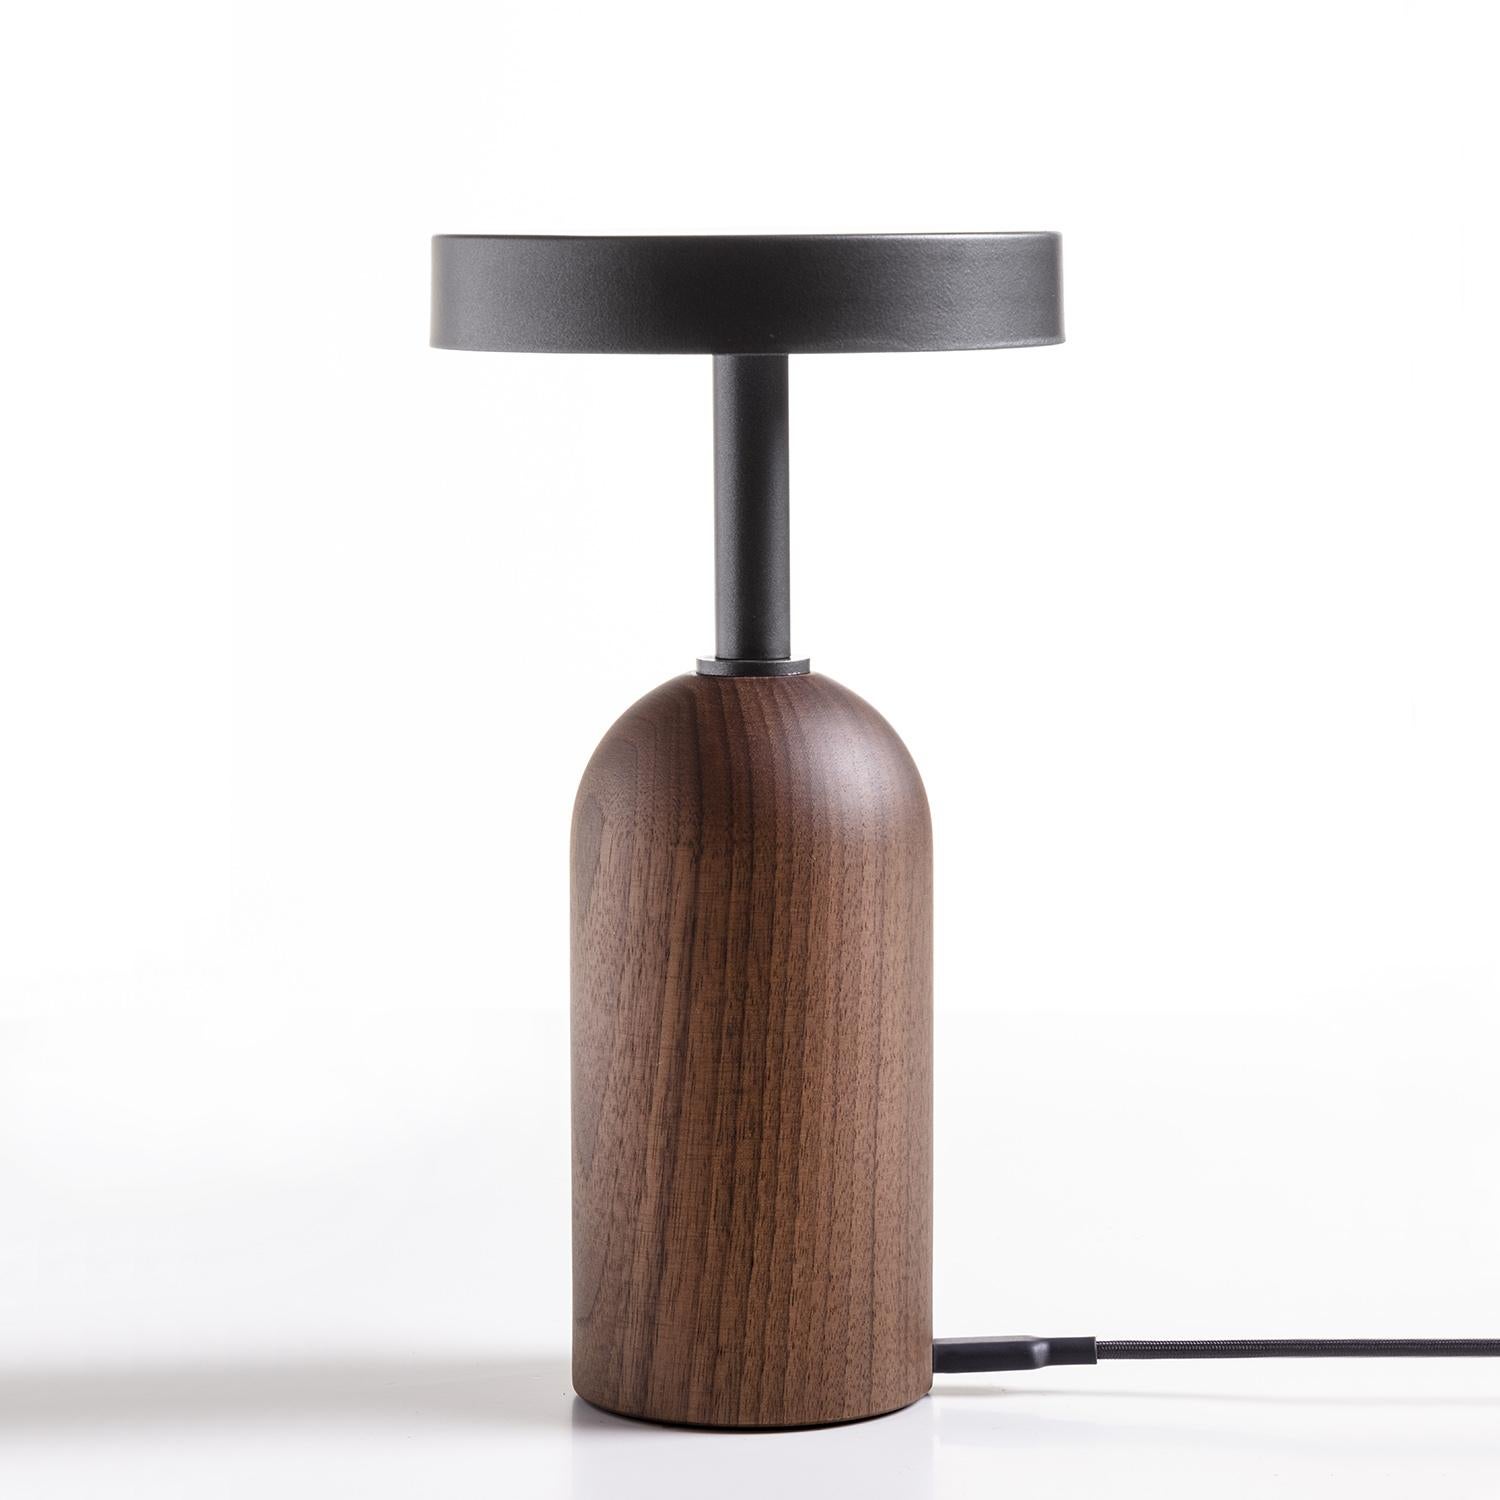 Lampe de table Stelle Lampe avec base en bois de noyer massif et avec 
plateau métallique en finition gris fer. Lampe de table sans fil à LED à intensité variable,
avec mécanisme d'interrupteur avec pad tactile en haut du diffuseur, avec
diffuseur